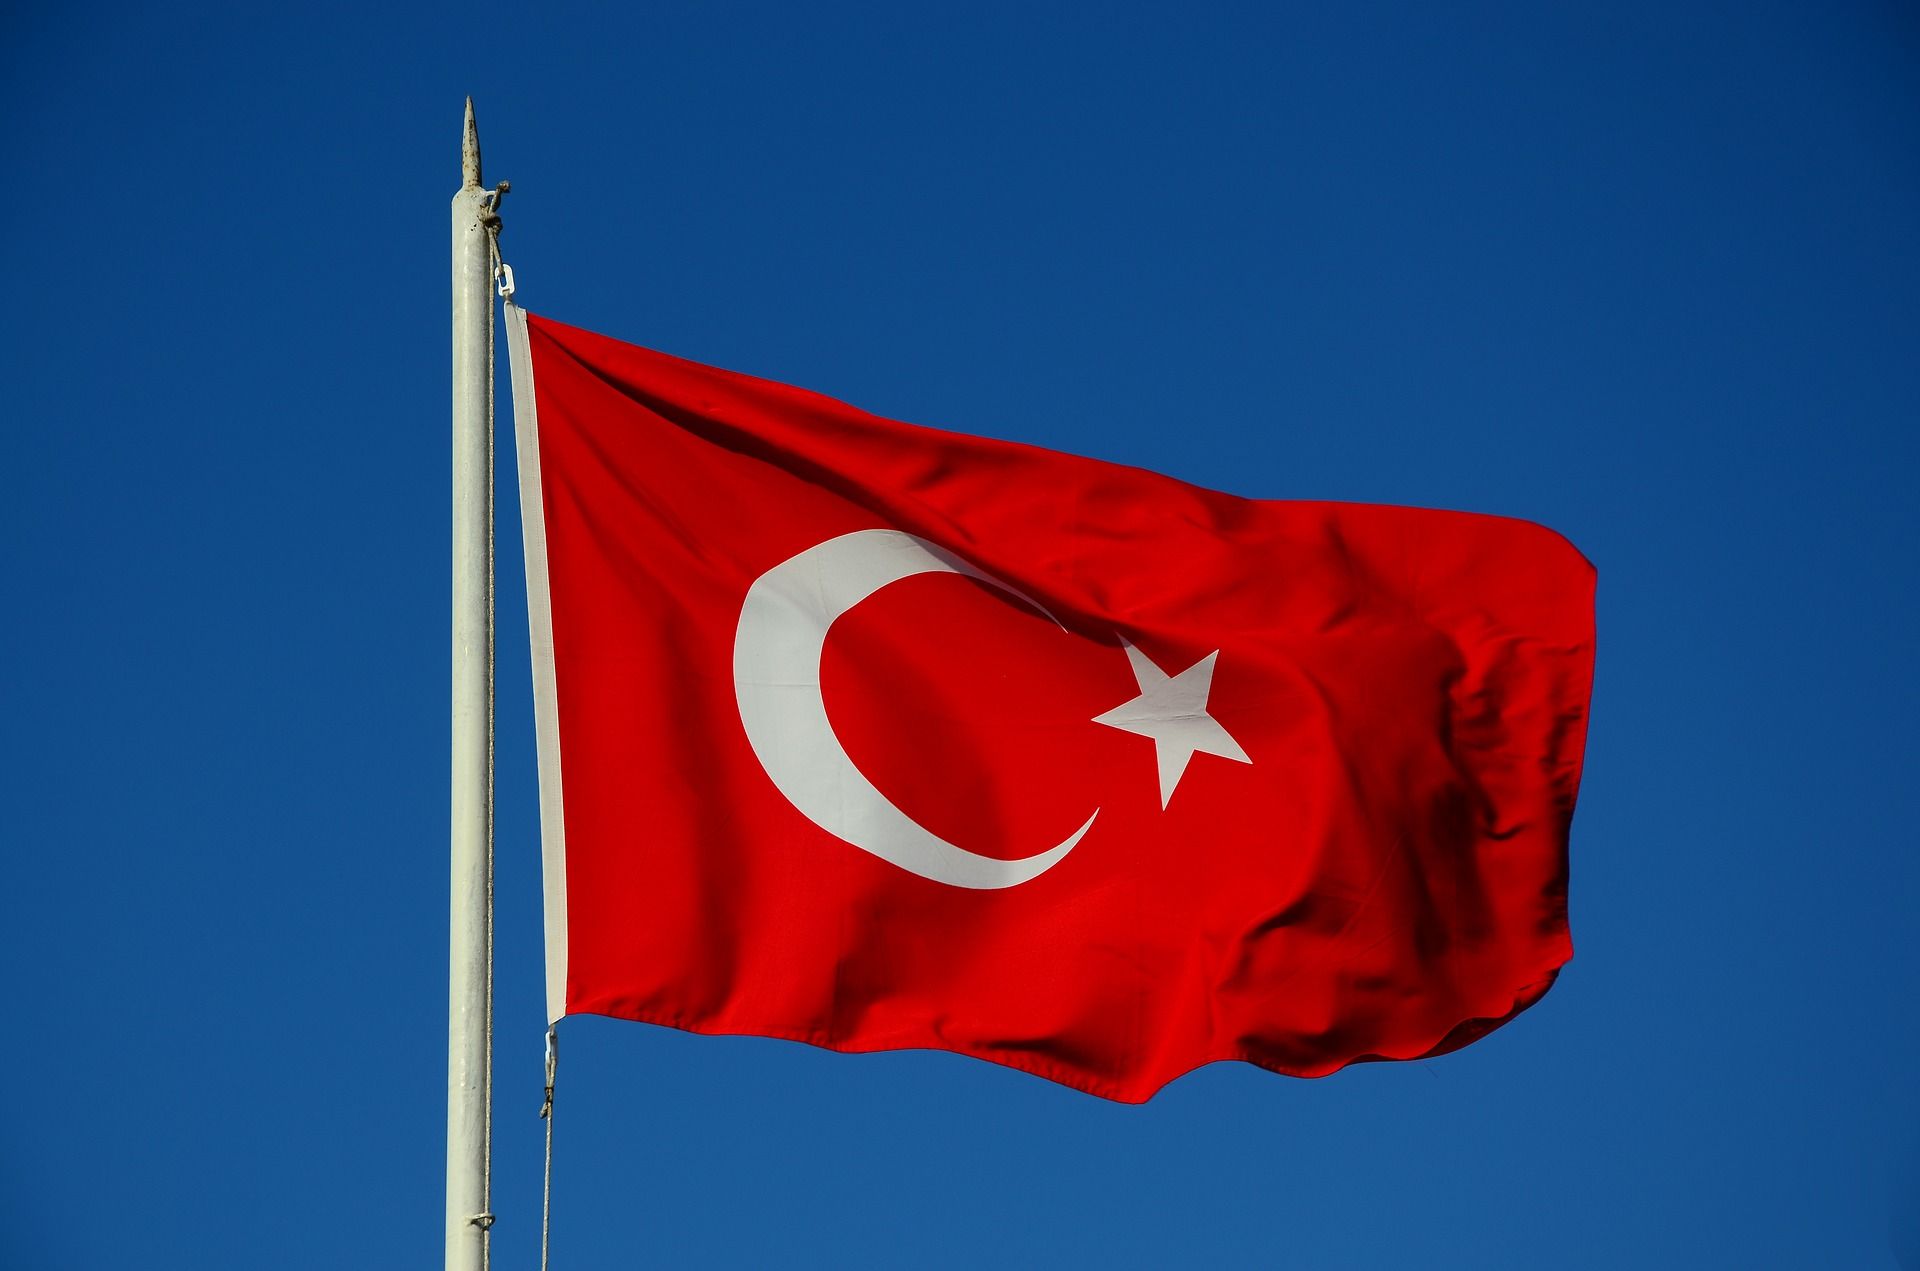 Simbol bulan bintang pada bendera Turki - Apa makna bulan dan bintang dalam Islam serta penjelasannnya di dalam Al Qur'an, simak ulasan lengkapnya.